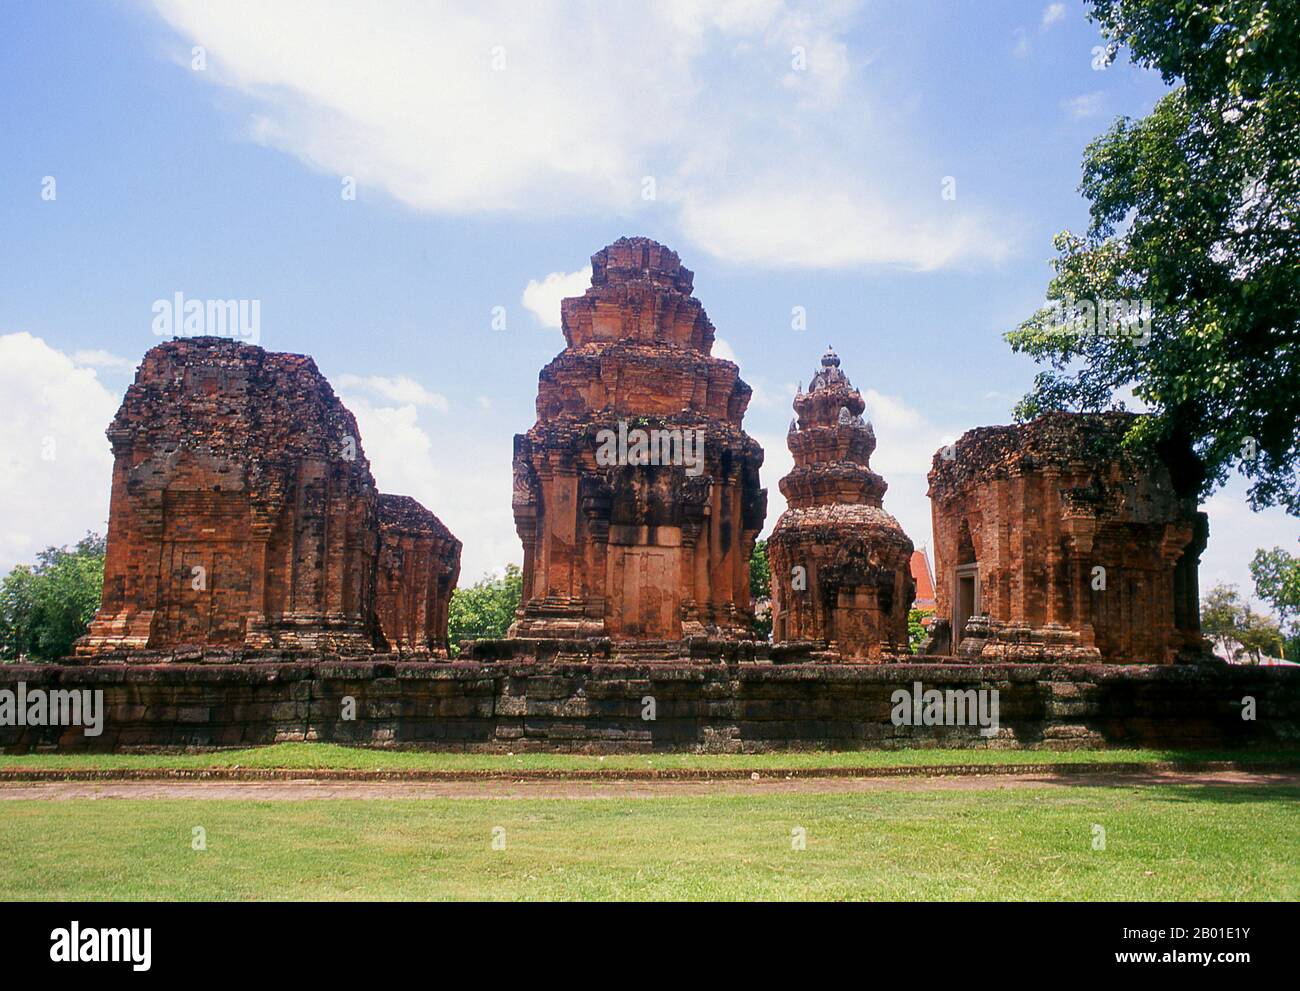 Thailand: Die Backsteinprangs von Prasat Sikhoraphum, Provinz Surin, Nordost-Thailand. Prasat Sikhoraphum ist ein Hindu-Tempel von Khmer, der im 12. Jahrhundert von König Suryavarman II. (R. 1113-1150) erbaut wurde. Prasat Sikhoraphum stammt aus dem frühen 12. Jahrhundert und wurde wunderschön restauriert. Es besteht aus fünf Steinprangs auf einer quadratischen Seitenplattform, die von Seeräuchen umgeben ist. Das Lintel und die Säulen des zentralen Prang sind wunderschön geschnitzt mit himmlischen Tänzern, oder apsara, und anderen Szenen aus der hinduistischen Mythologie. Stockfoto